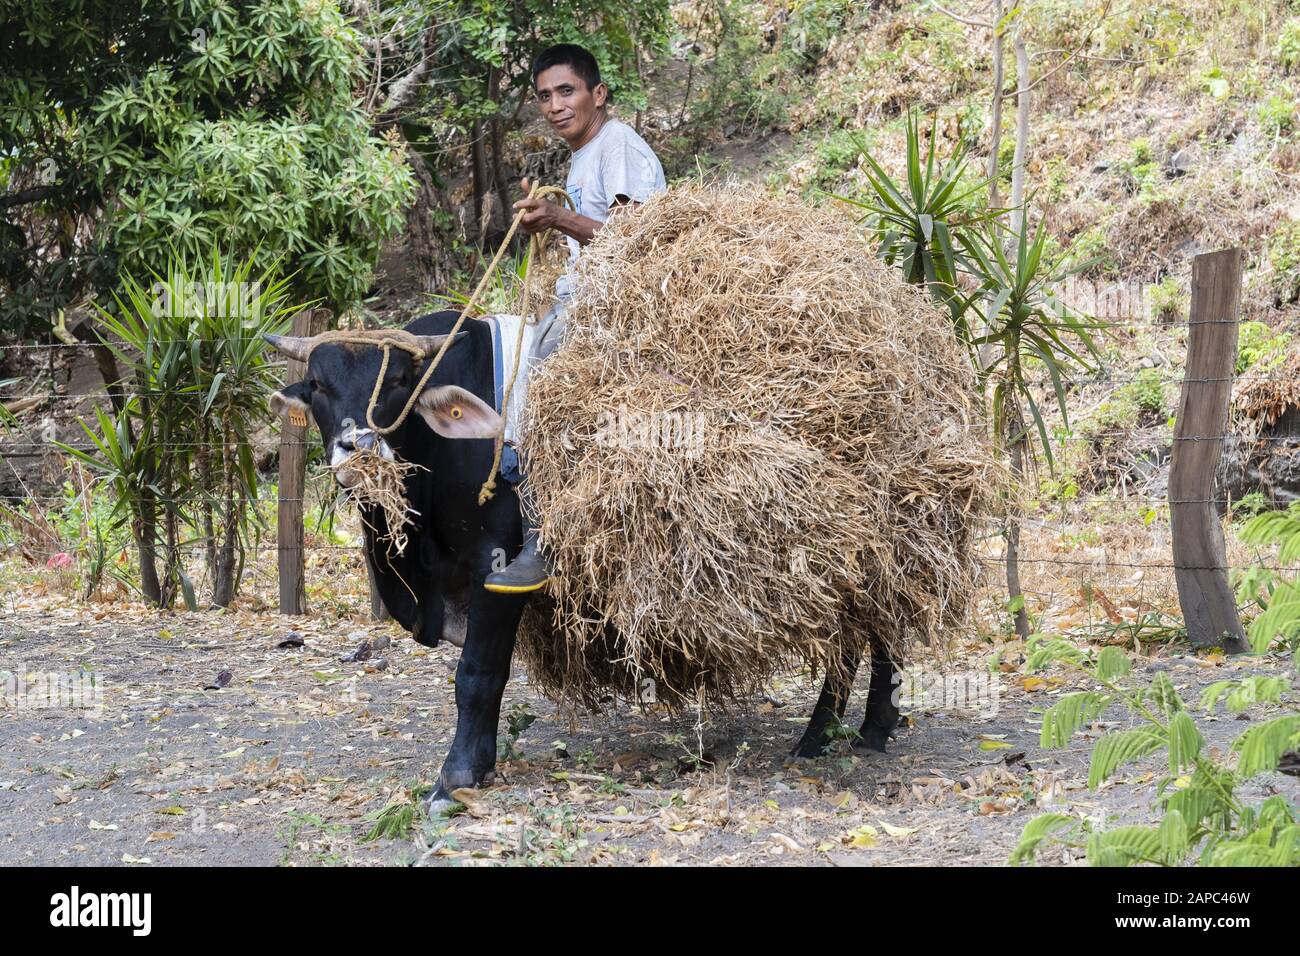 Amérique Centrale, Nicaragua. Une main de ranch qui monte un taureau et porte du foin sur l'île rurale d'Ometepe Banque D'Images